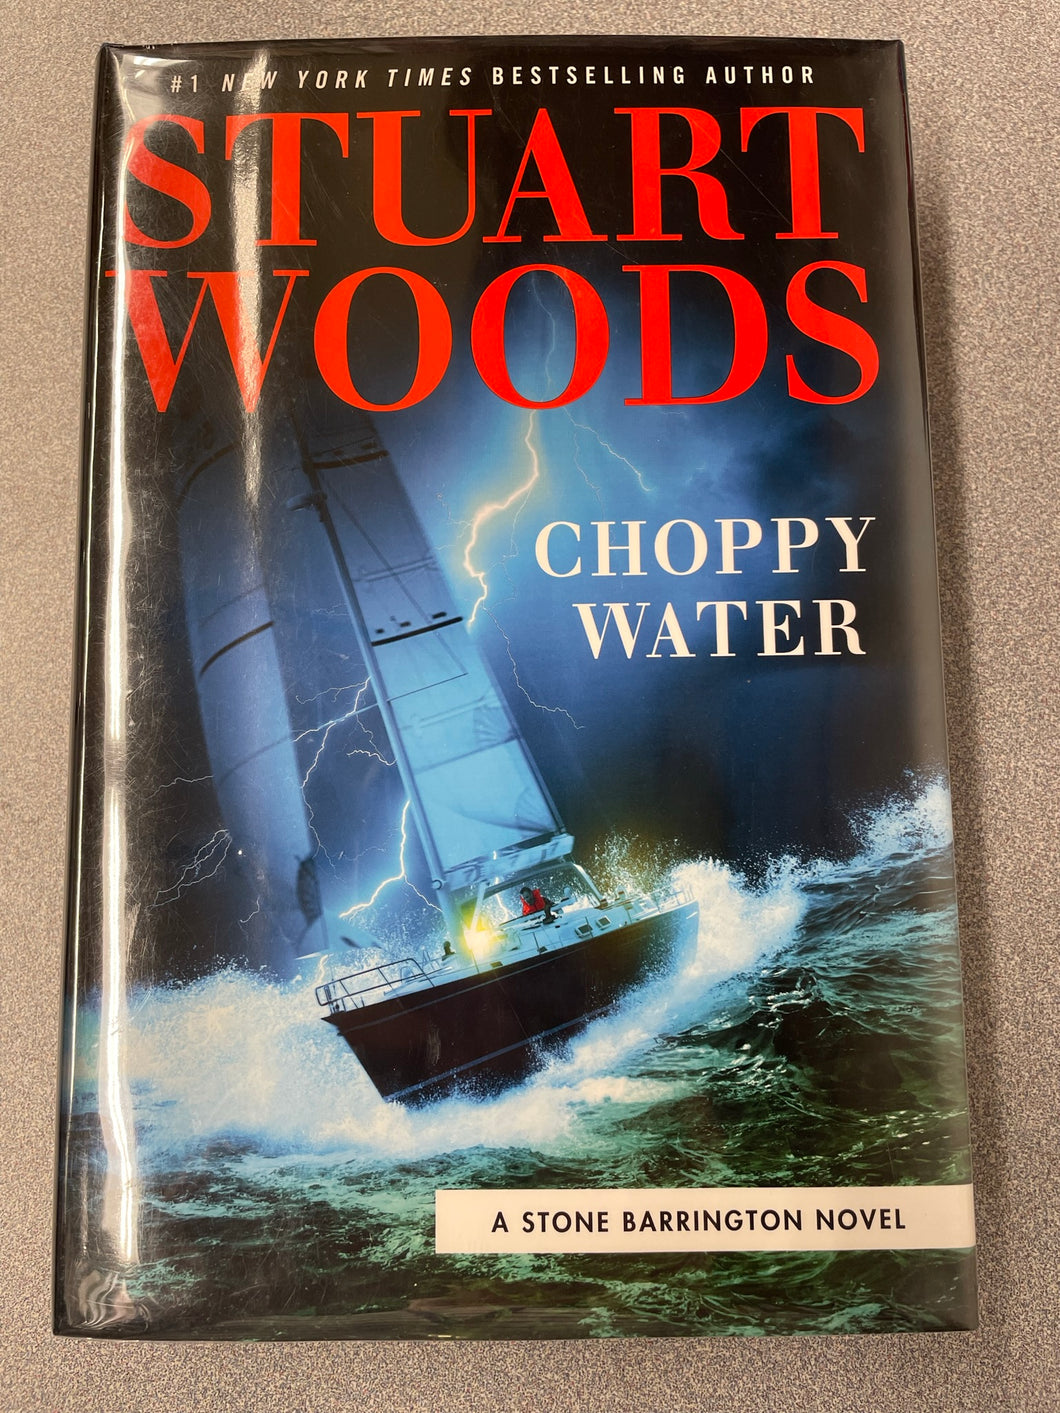 Woods, Stuart, Choppy Water [2020] MY 6/23